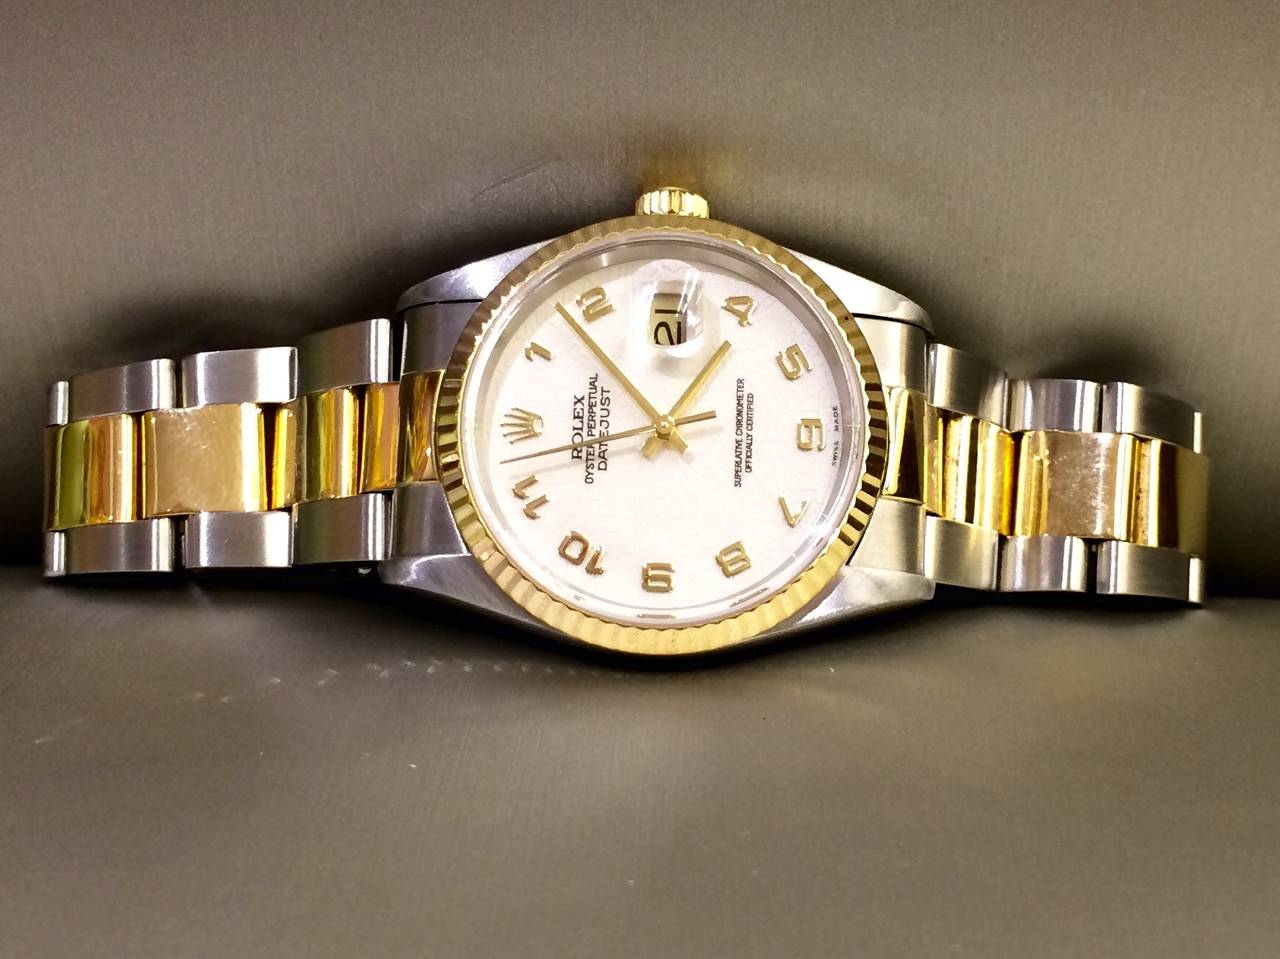 Rolex Oyster Perpetual Datejust Wristwatch Model # 16233  Serial # U554855 Stainless Steel & 18kt Gold, 36mm, Oyster Bracelet, Jubilee Arabic Dial.